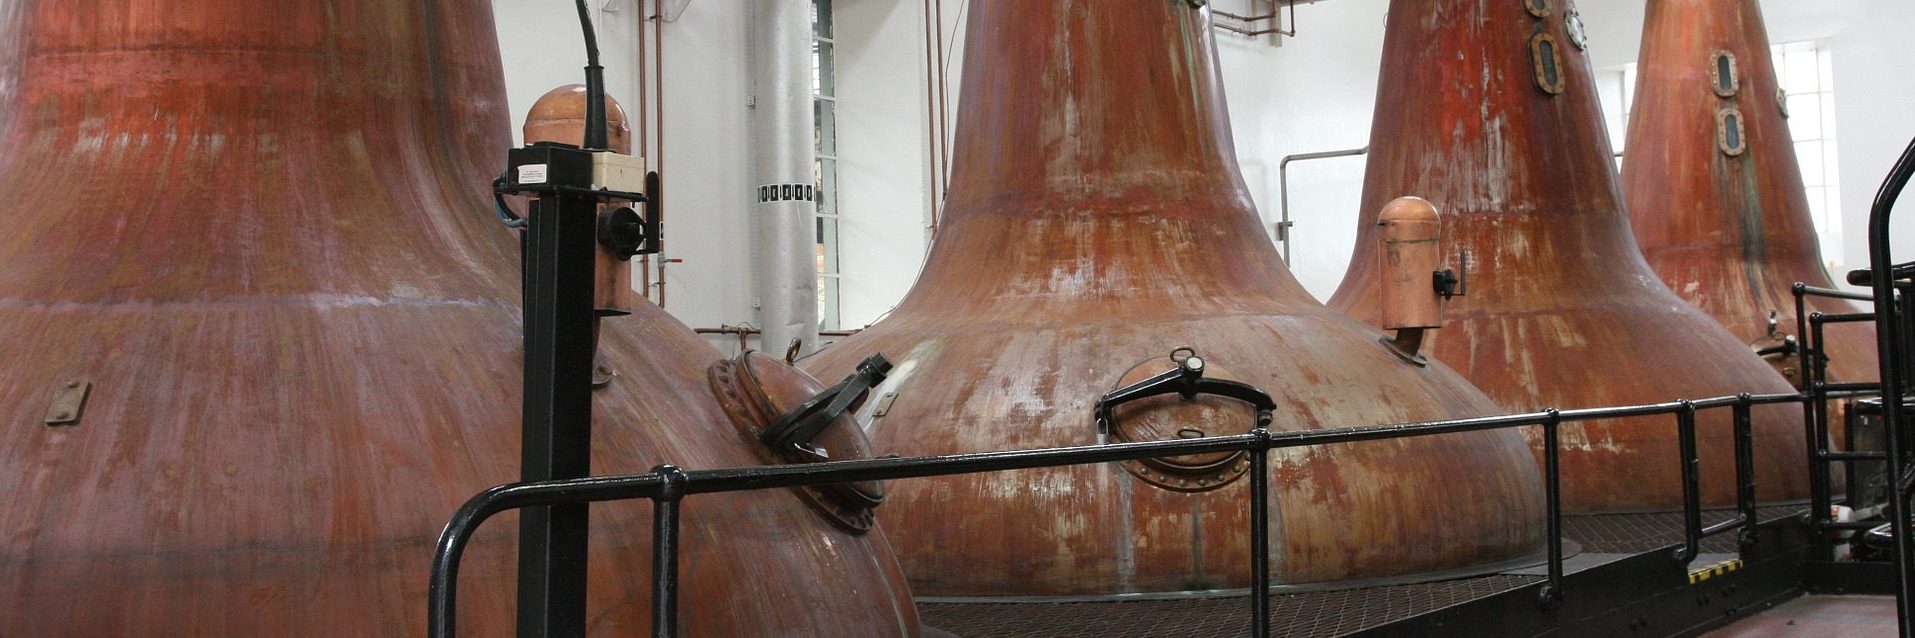 Distilarea în producerea single malt-ului